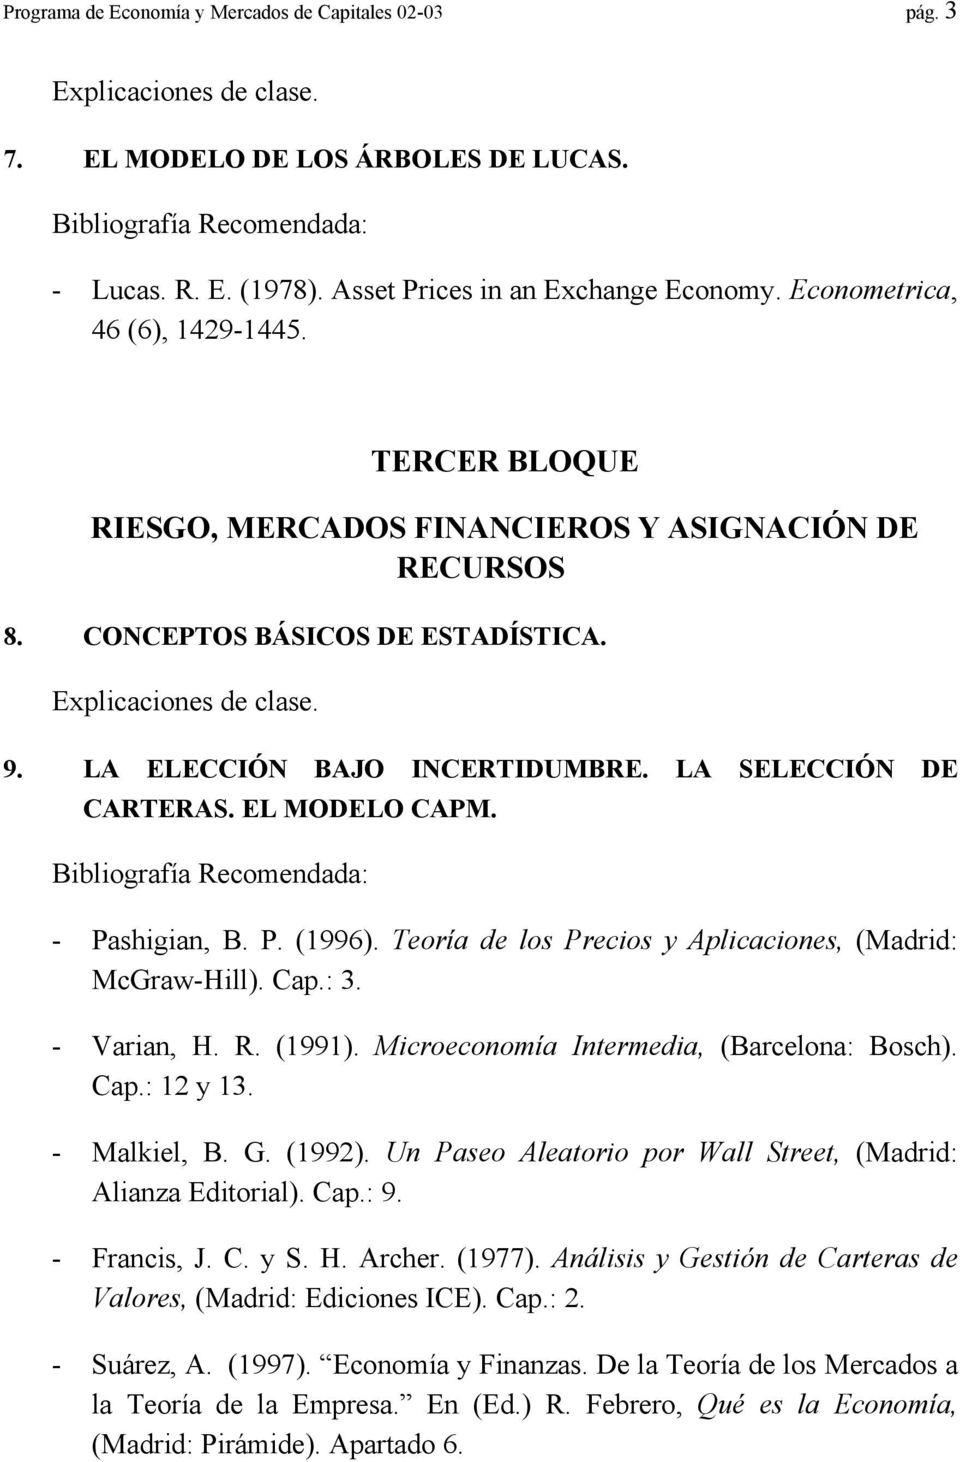 LA SELECCIÓN DE CARTERAS. EL MODELO CAPM. - Pashigian, B. P. (1996). Teoría de los Precios y Aplicaciones, (Madrid: McGraw-Hill). Cap.: 3. - Varian, H. R. (1991).